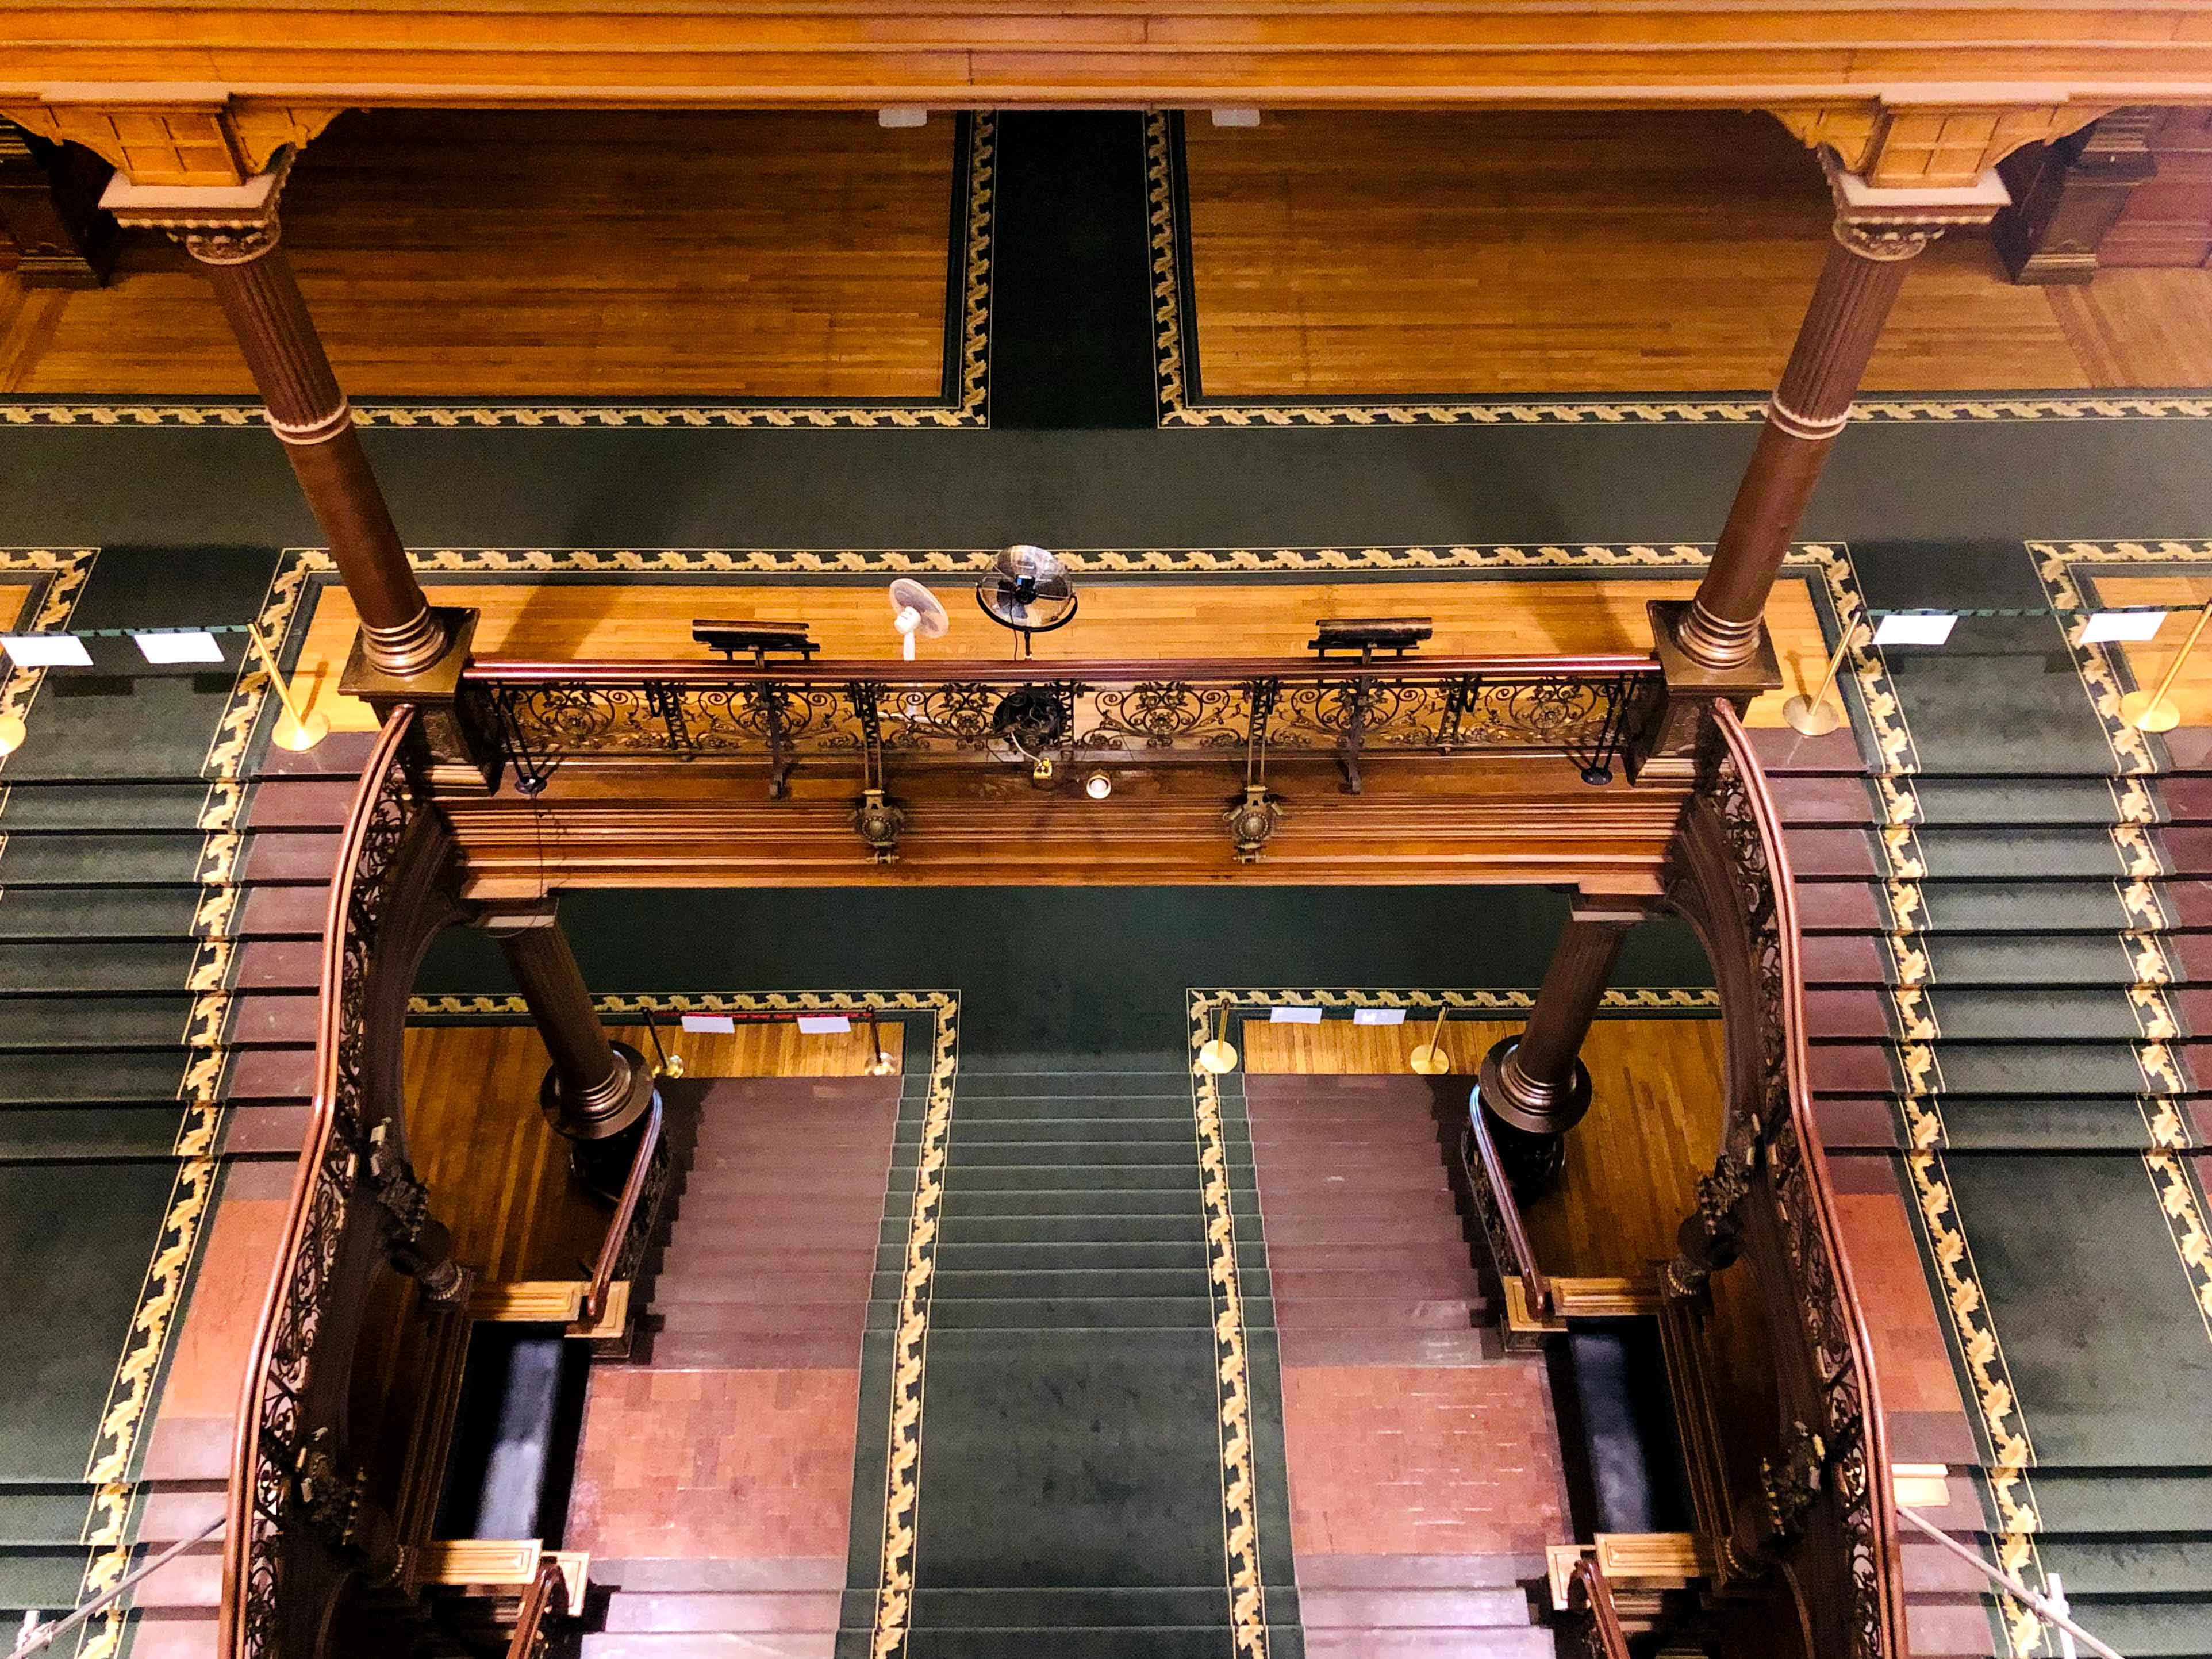 Une vue de haut en bas du grand escalier montrant les deux niveaux, les colonnes et la ferronnerie.